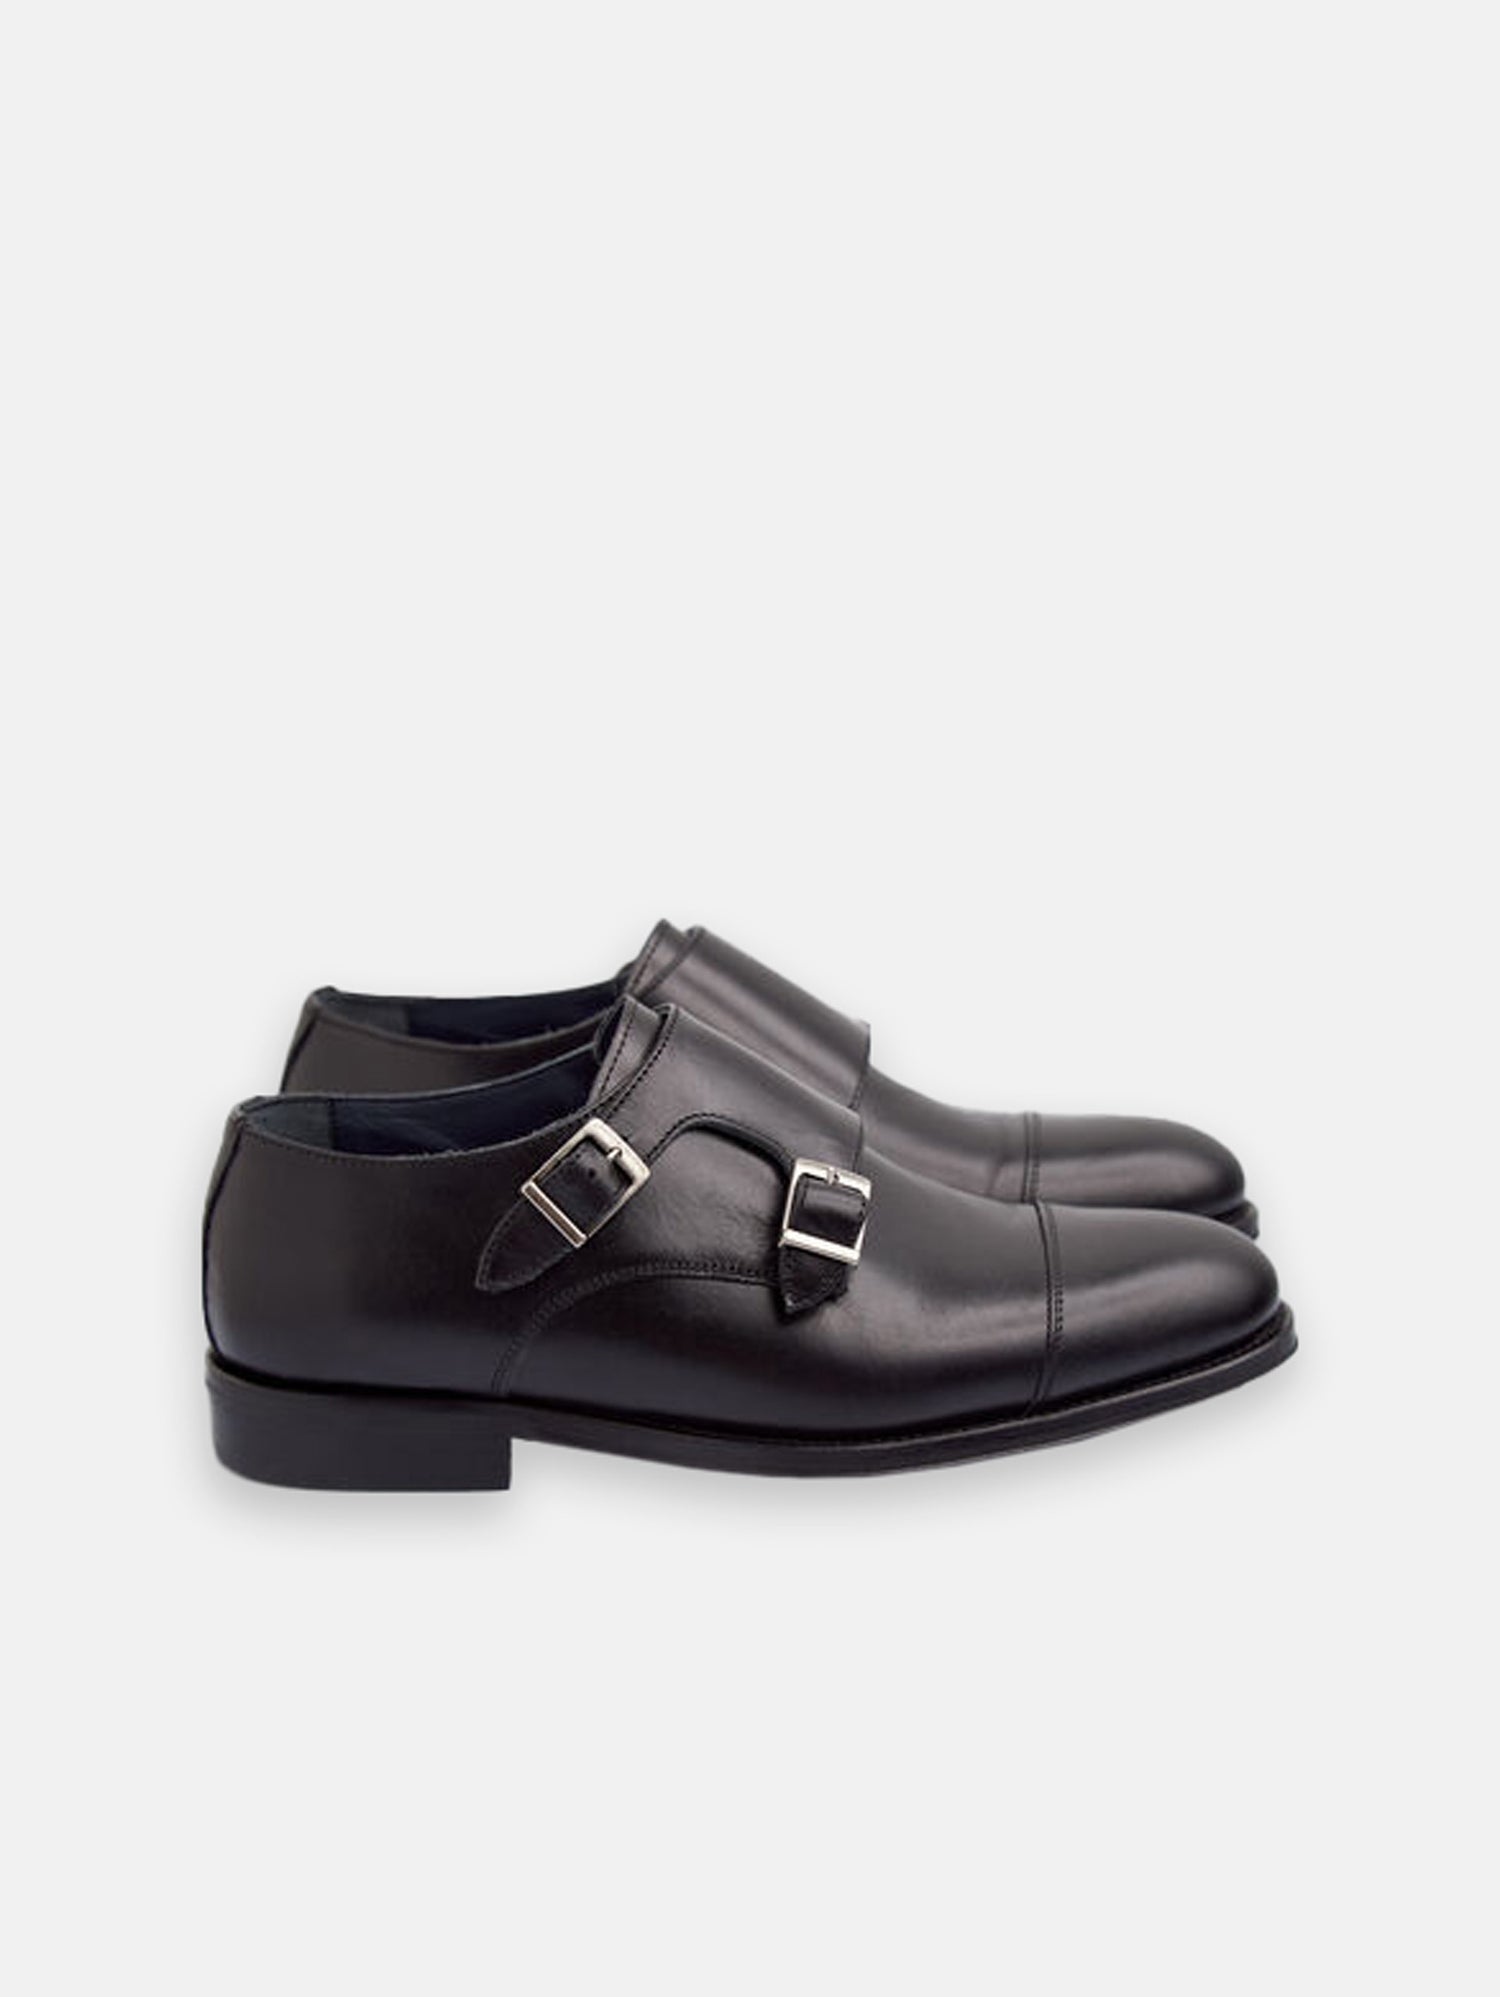 Black leather monkstrap dress shoe